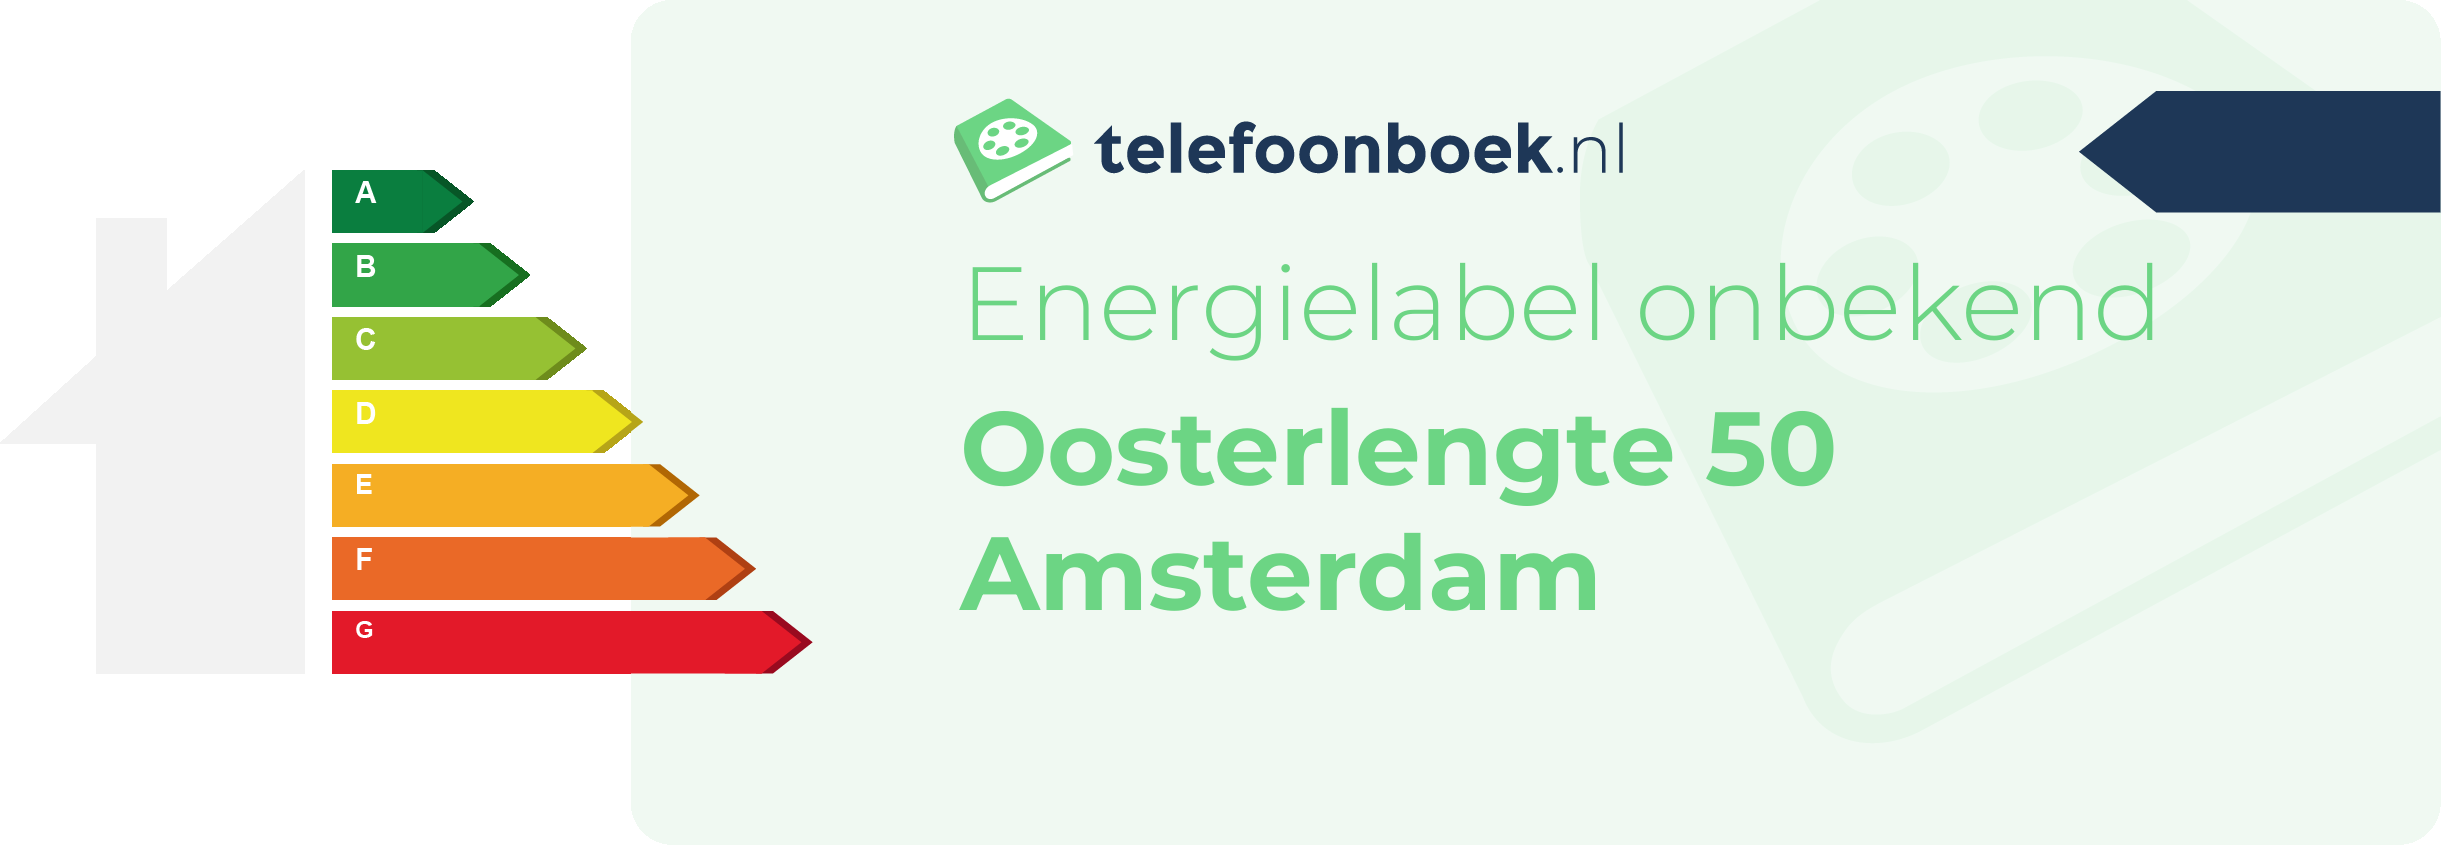 Energielabel Oosterlengte 50 Amsterdam